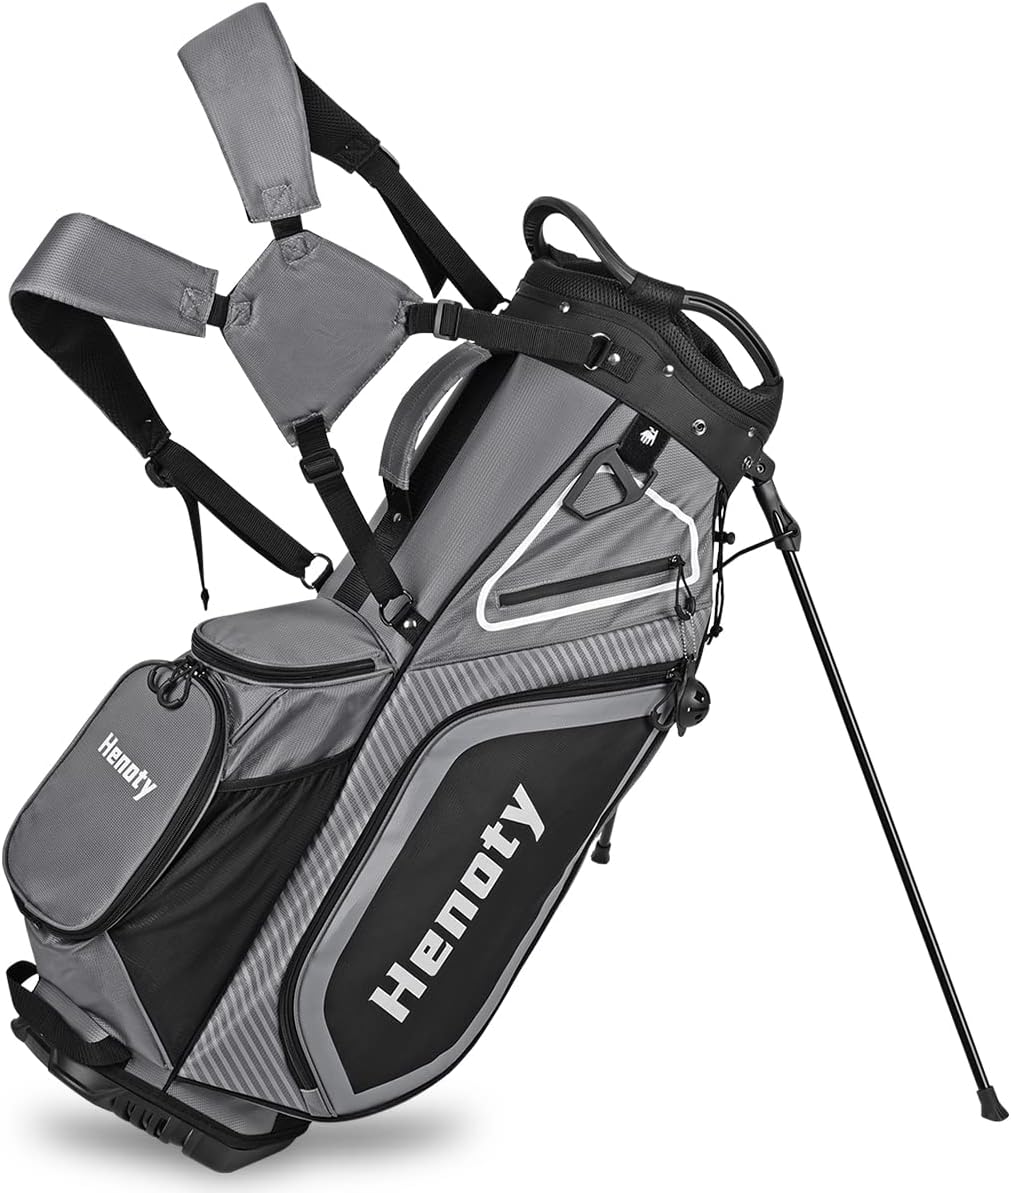 Sac de golf Henoty Stand Bag 14 diviseurs Ergonomique, léger avec support, 8 poches, pochette réfrigérante, housse poussière, bretelle sac à dos et diviseurs supérieurs